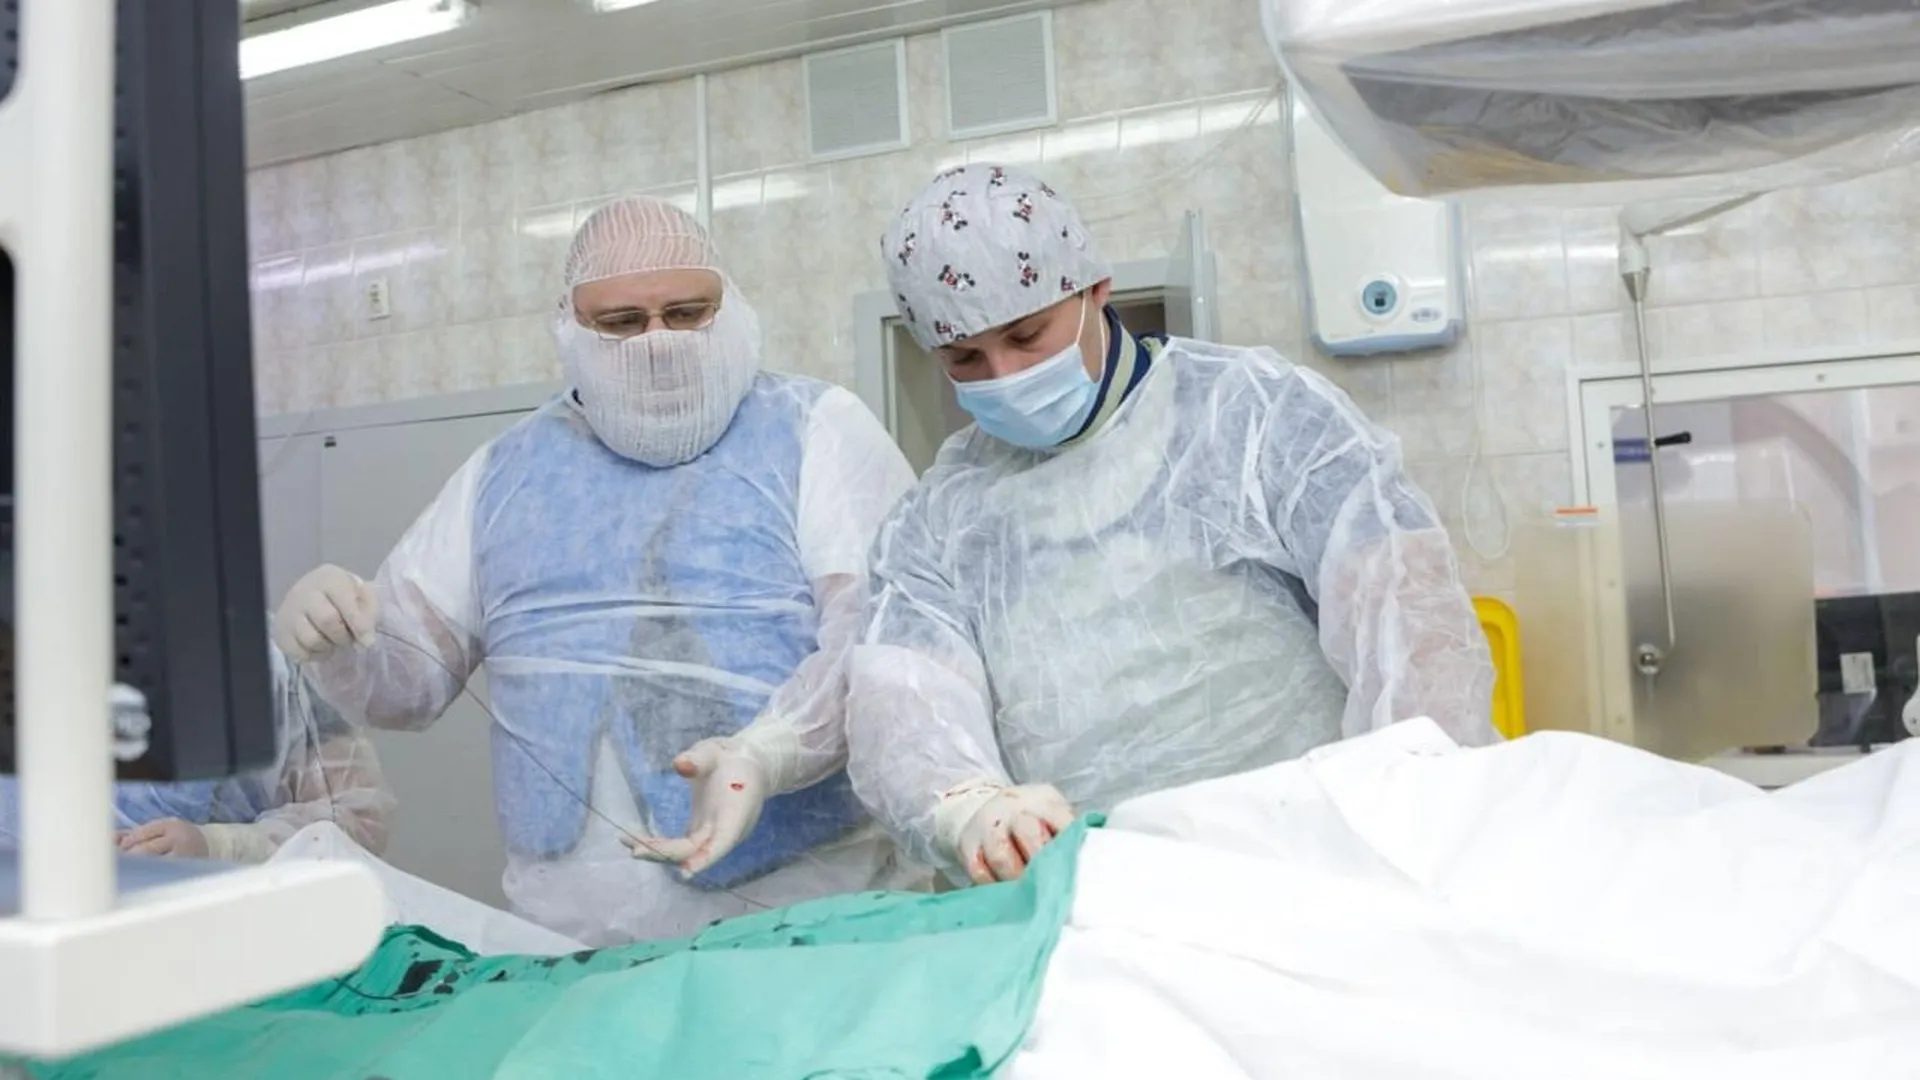 Новые виды операций для пациентов на гемодиализе начали проводить в Люберецкой больнице